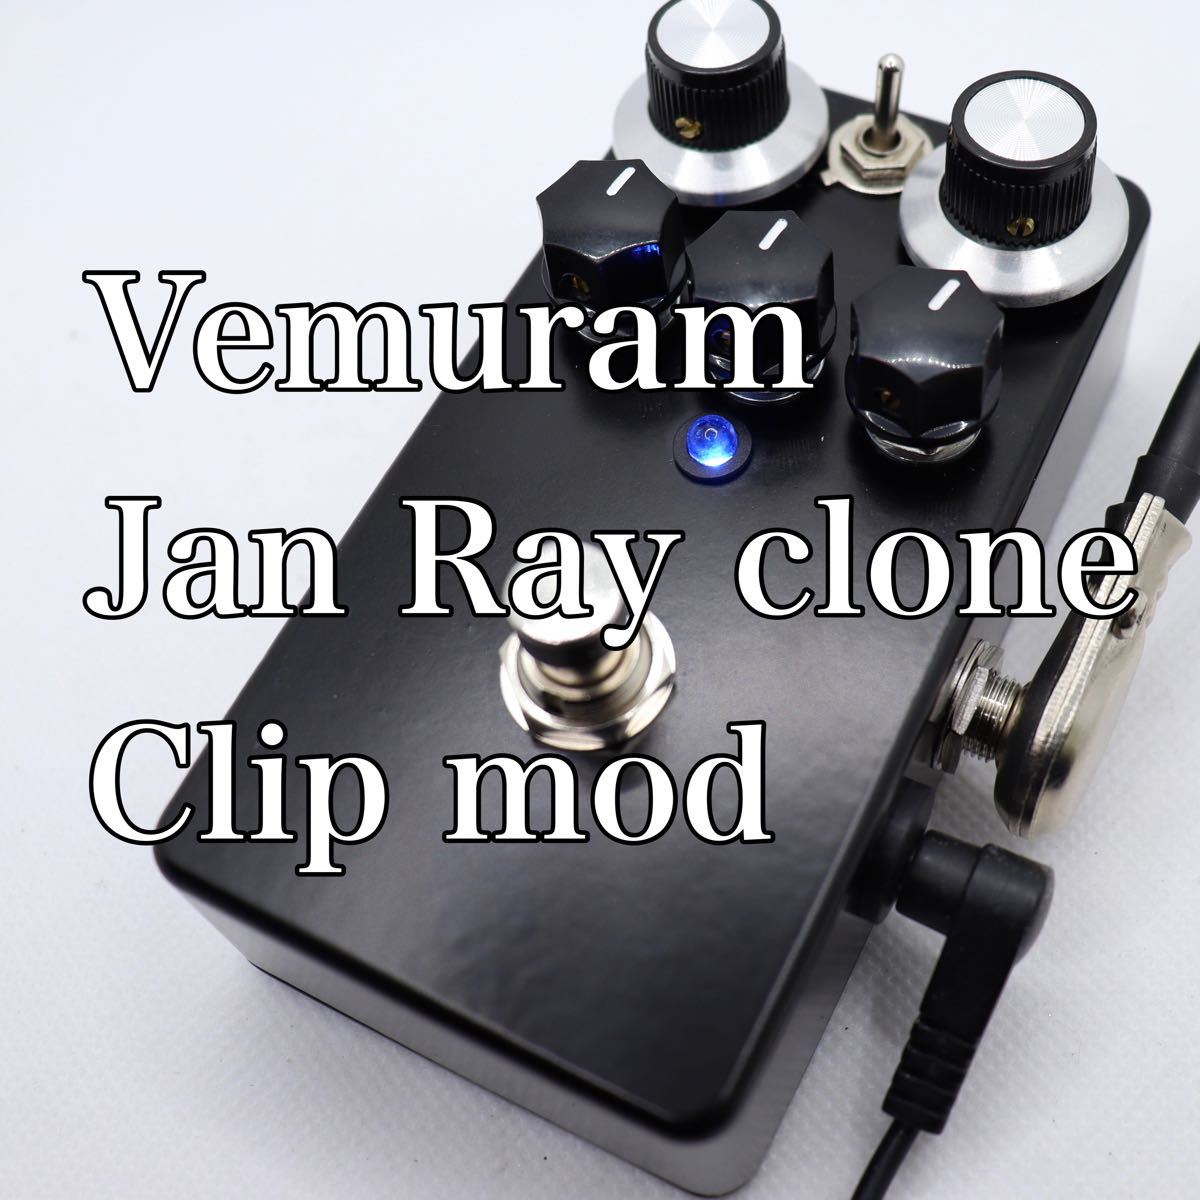 になるにつ Vemuram Jan Ray clone clip mod 8nRAC-m48113930078 